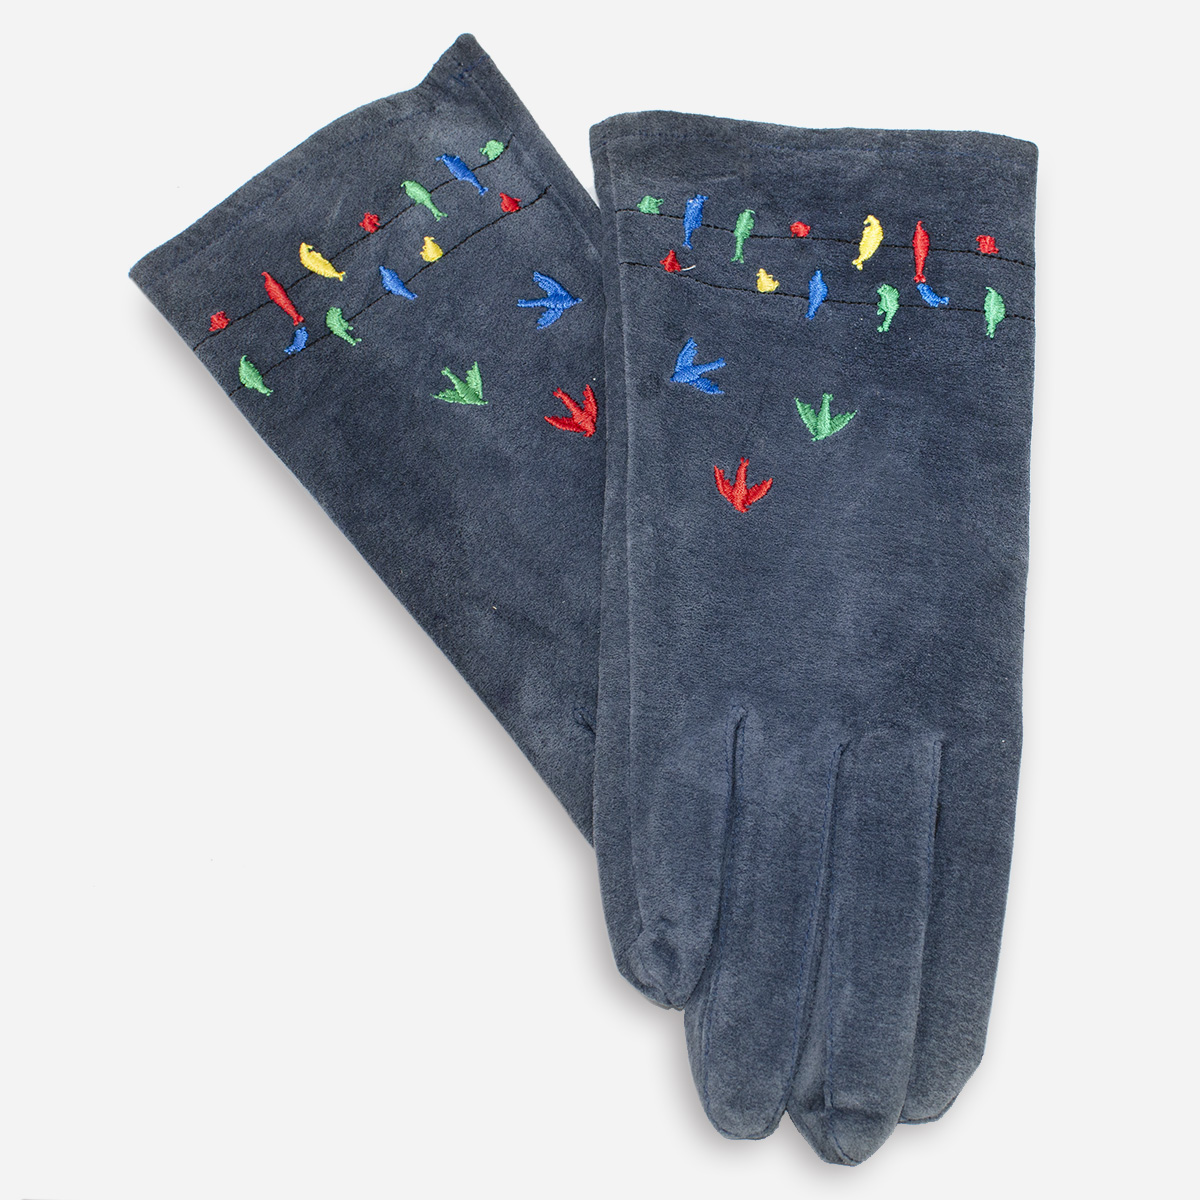 blue suede gloves